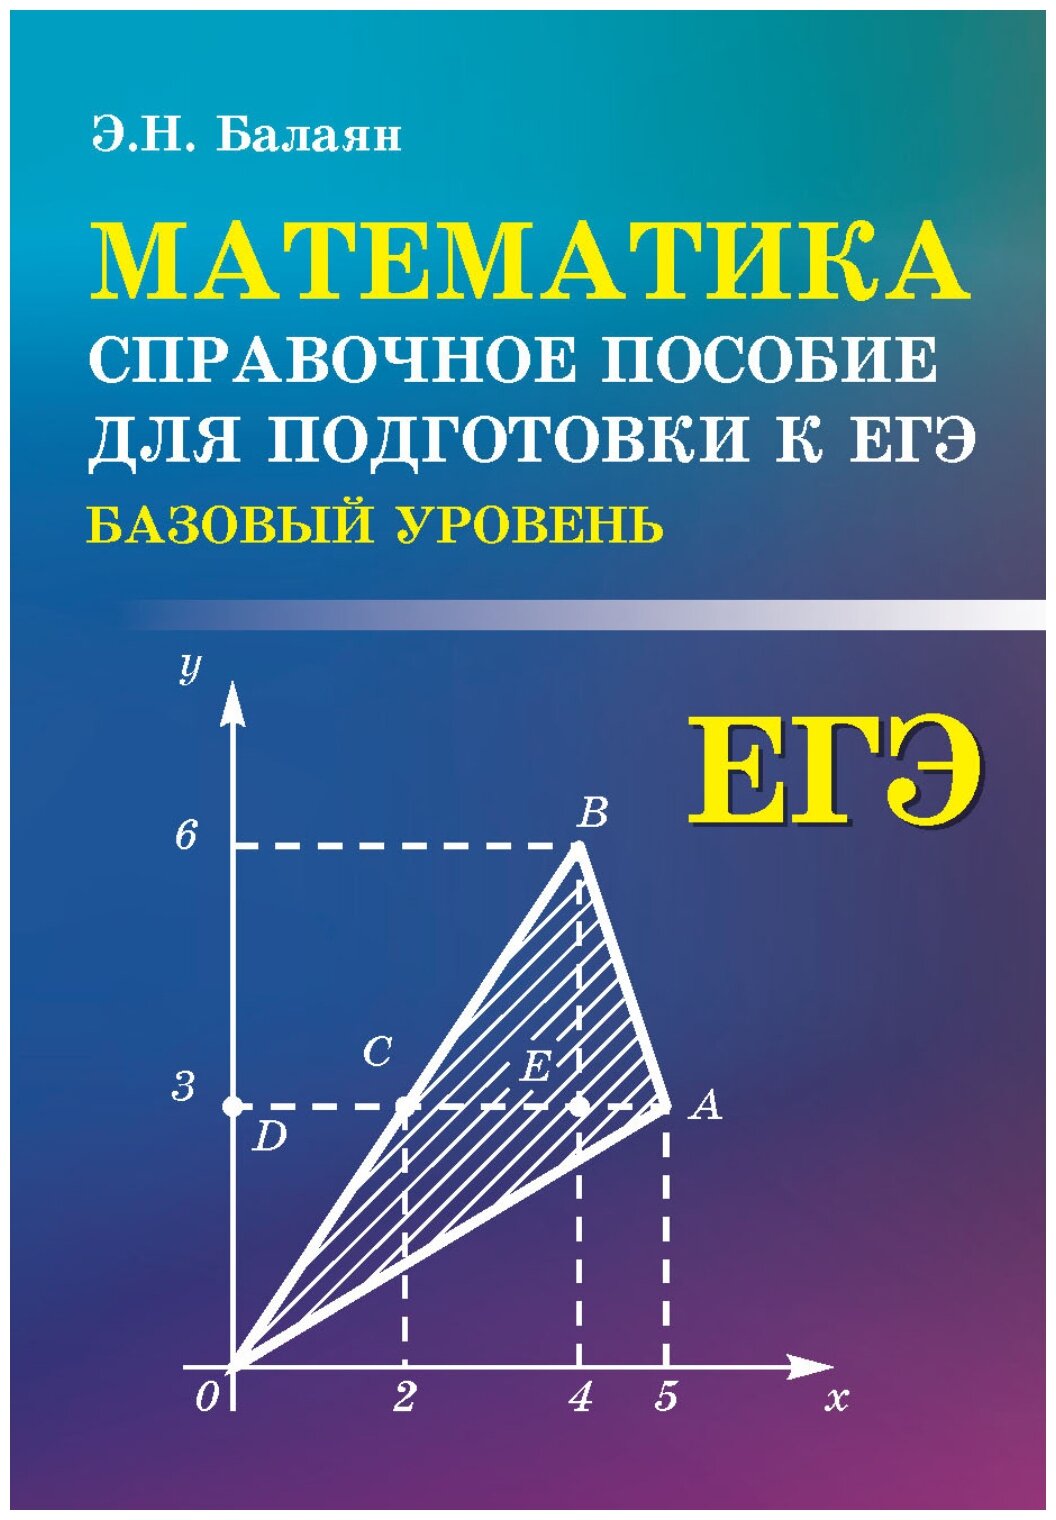 Математика Базовый уровень Справочное пособие для подготовки к ЕГЭ - фото №1